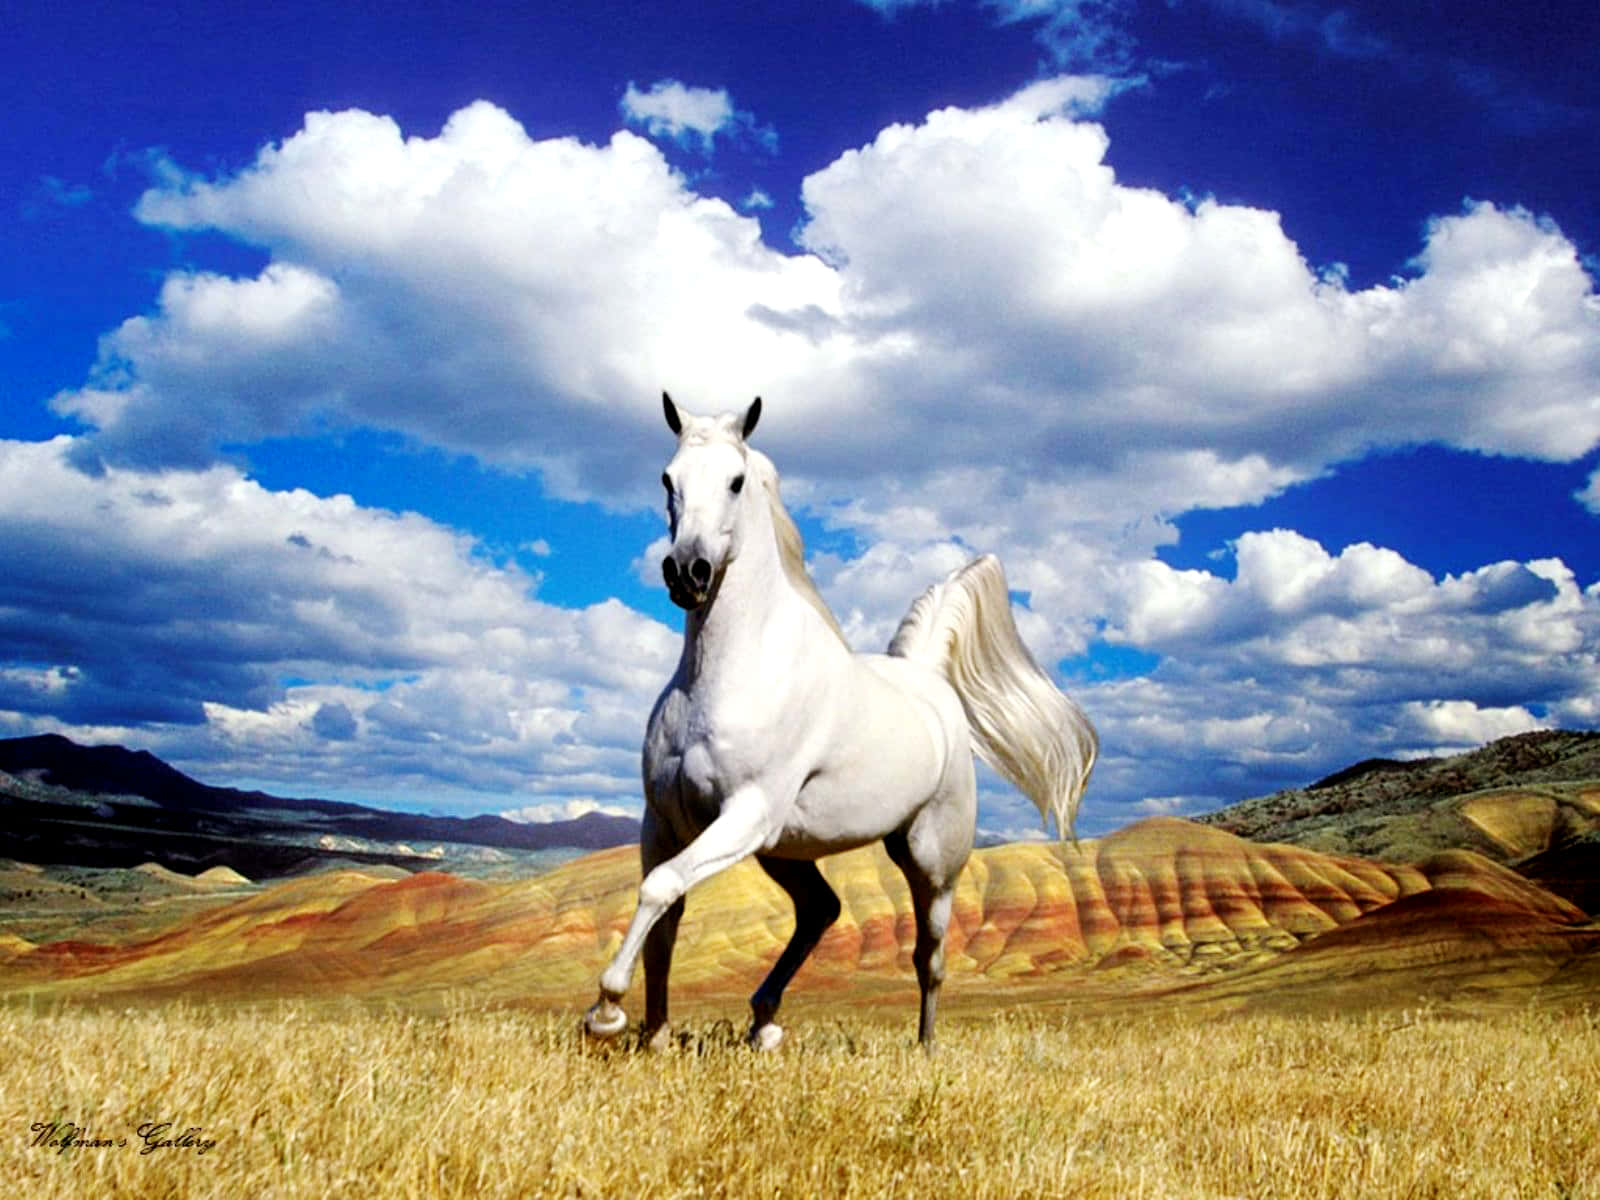 Bellissimaimmagine Di Un Cavallo Sotto Un Cielo Nuvoloso E Azzurro